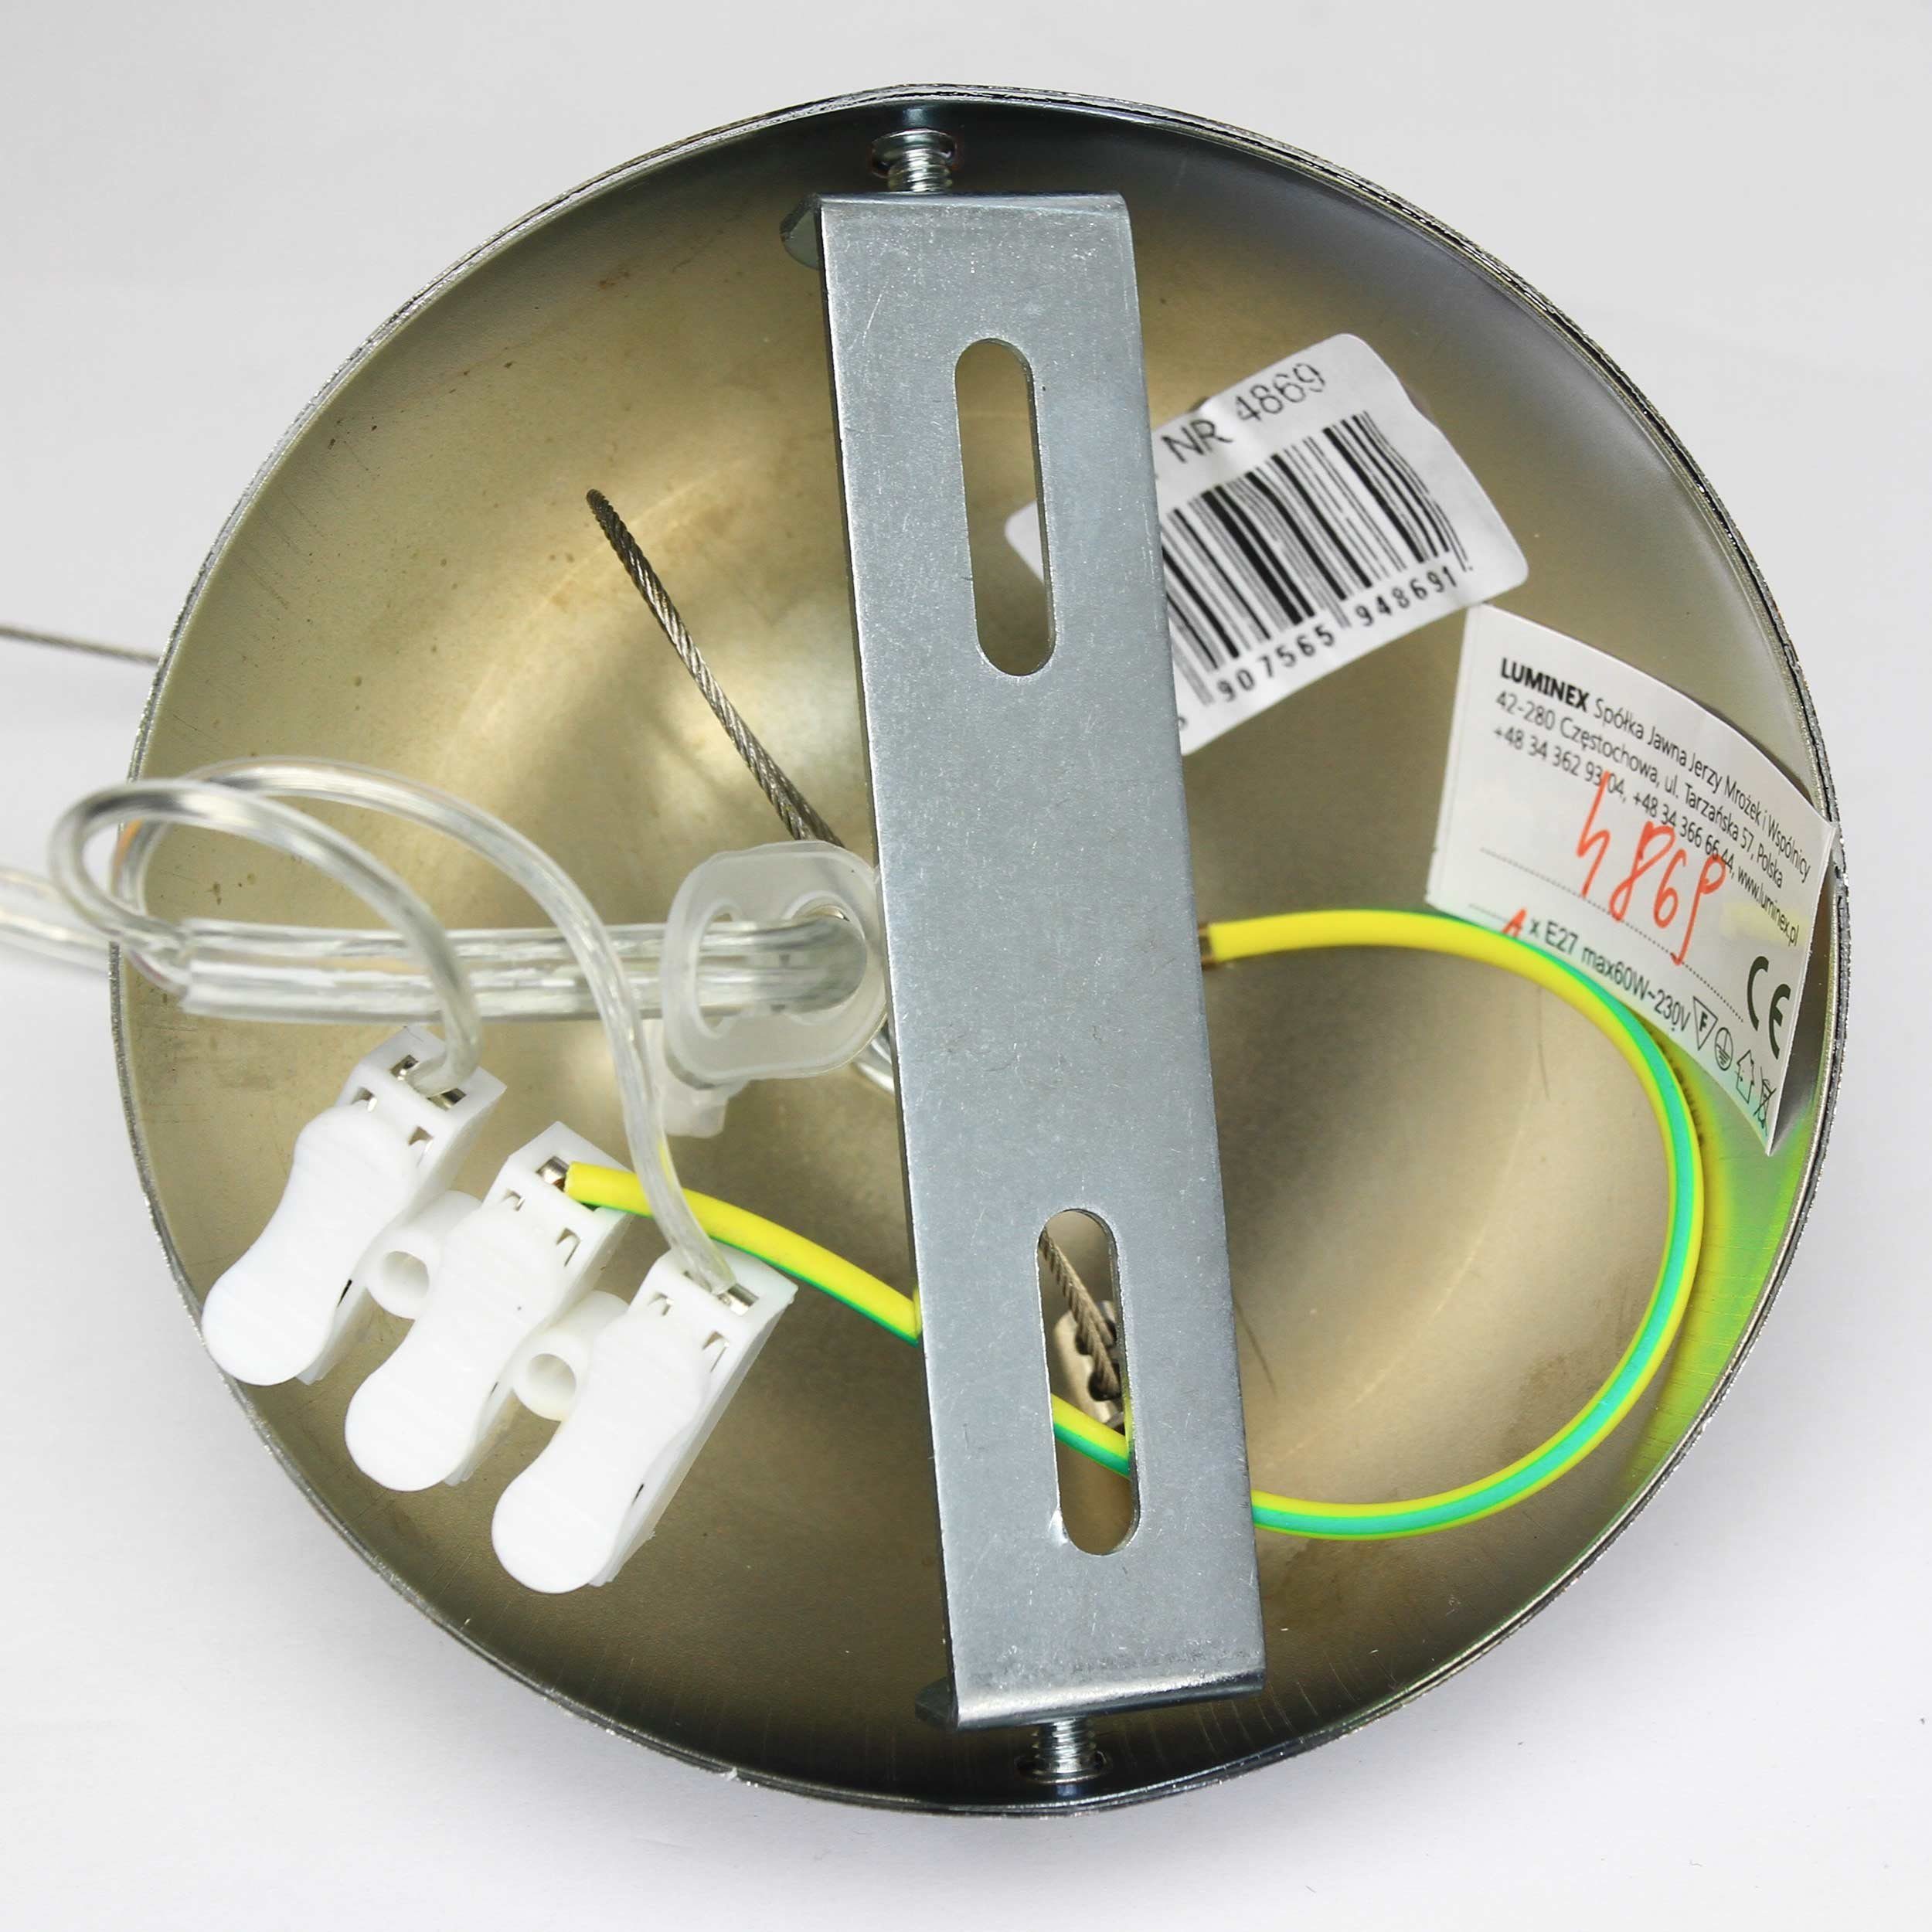 Pendelleuchte Lampe 3, Hängelampe Pendelleuchte Metall Industrie Kunststoff ohne Weiße SINGLE Leuchtmittel, Licht-Erlebnisse Küche